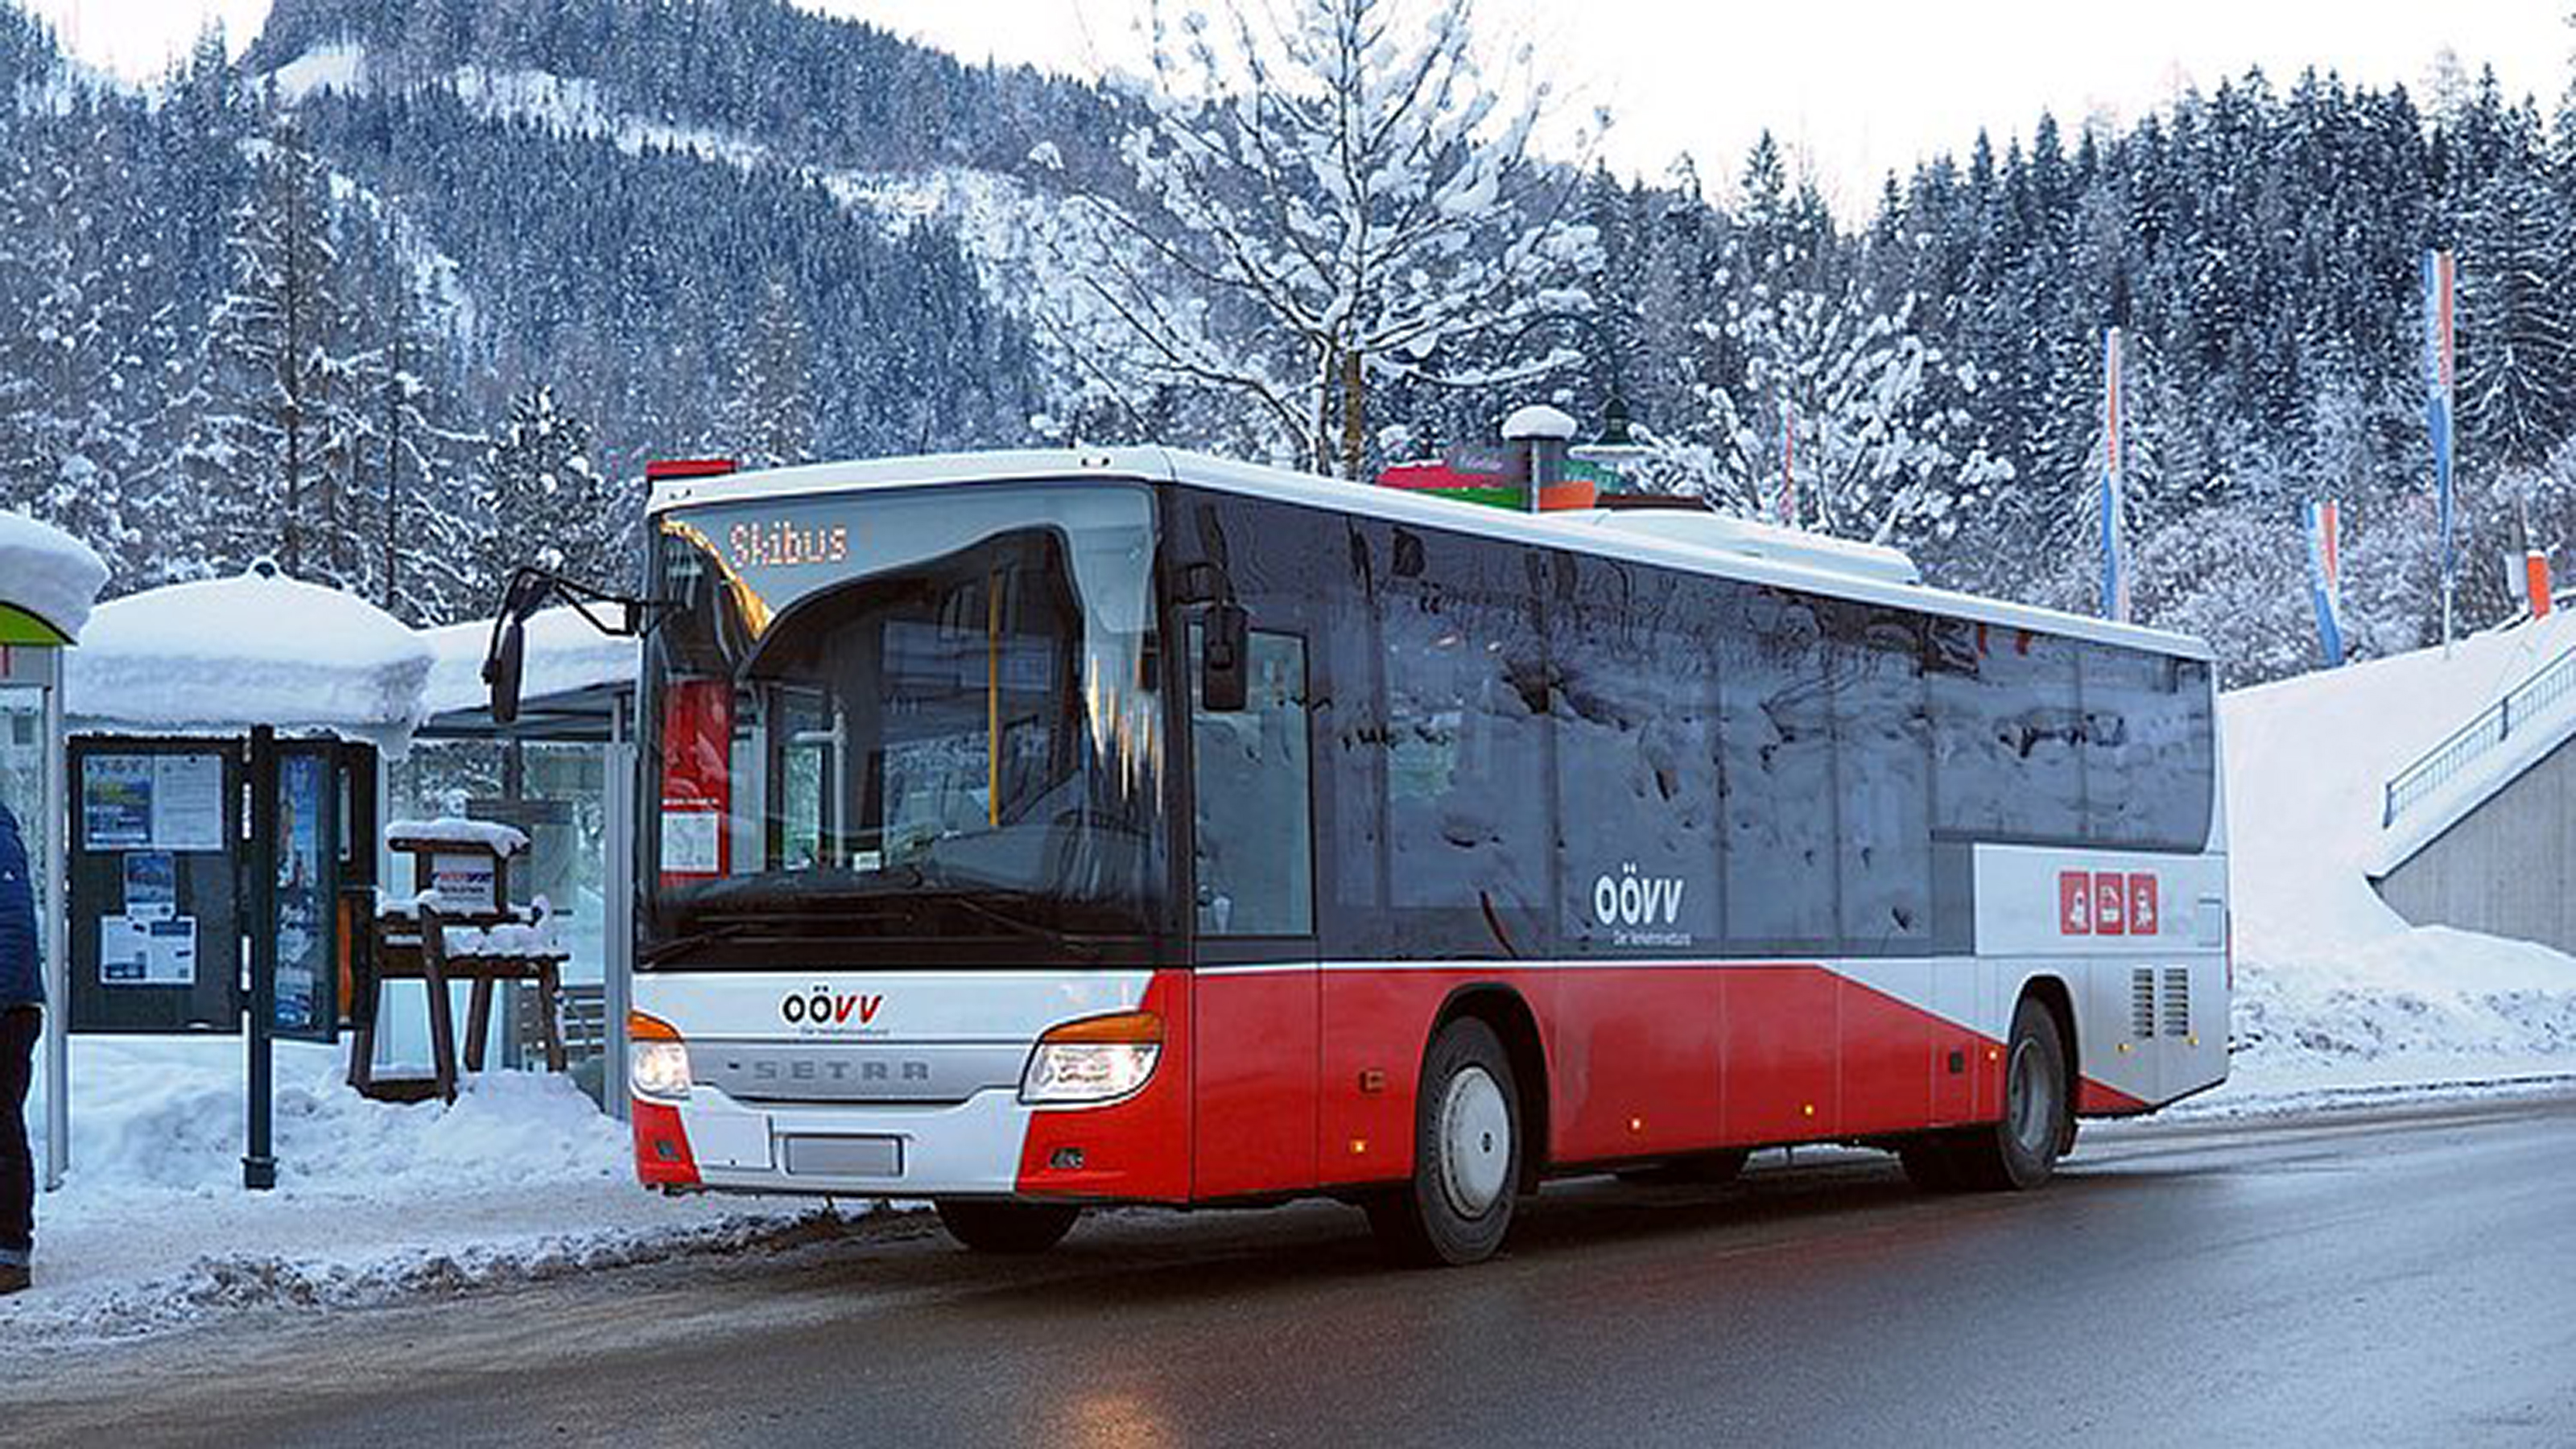 Winterinterlandschaft und ein Bus mit der Beschriftung "Skibus"